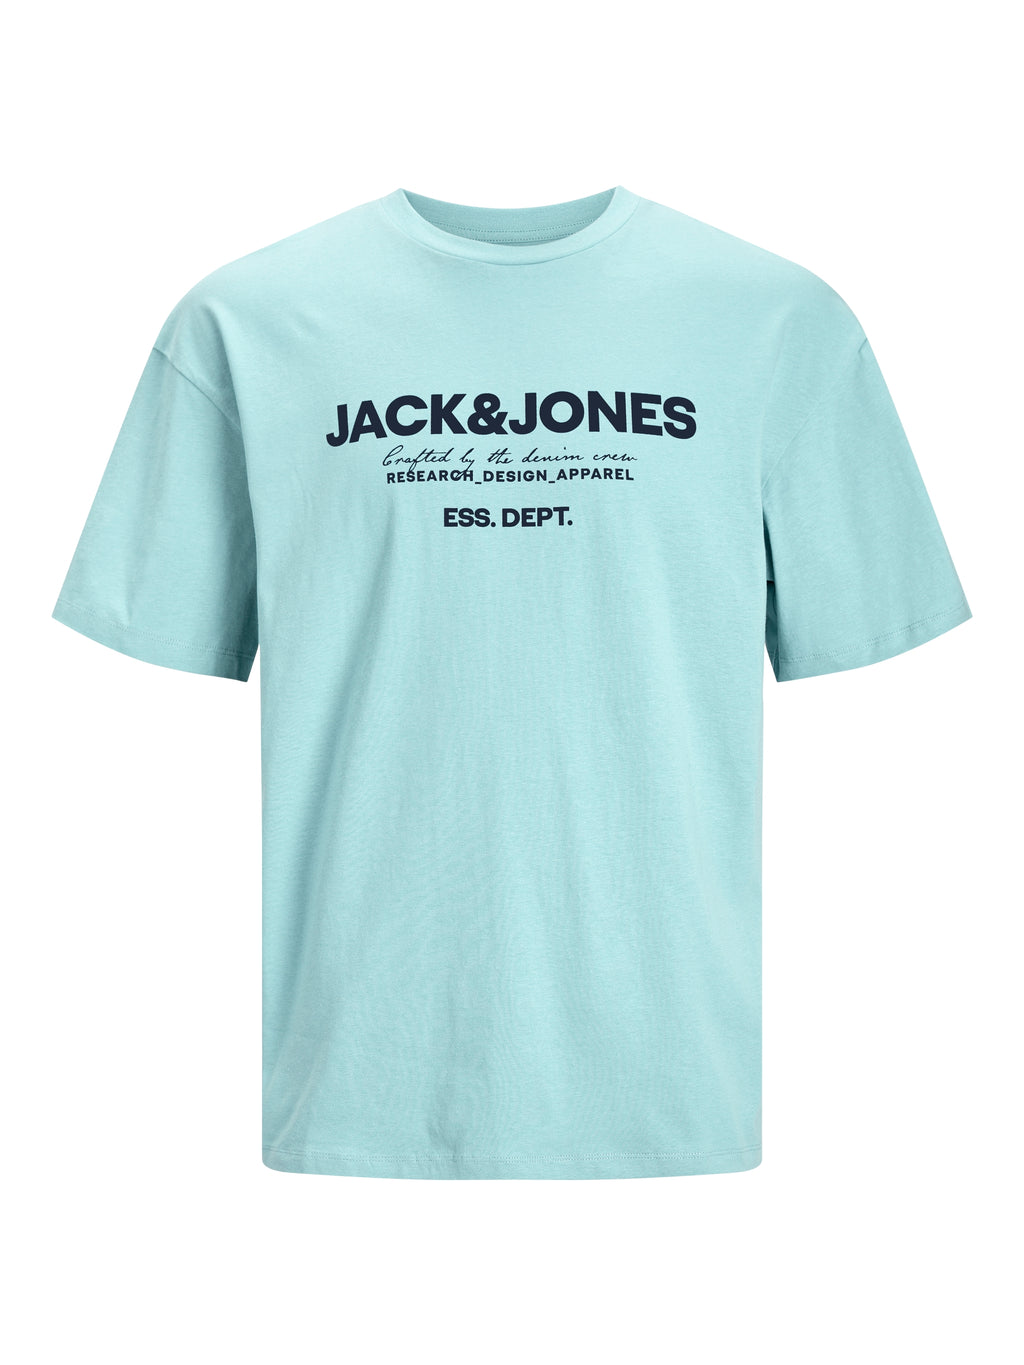 Jack & Jones Gale Tee Soothing Sea Mint - Raw Menswear